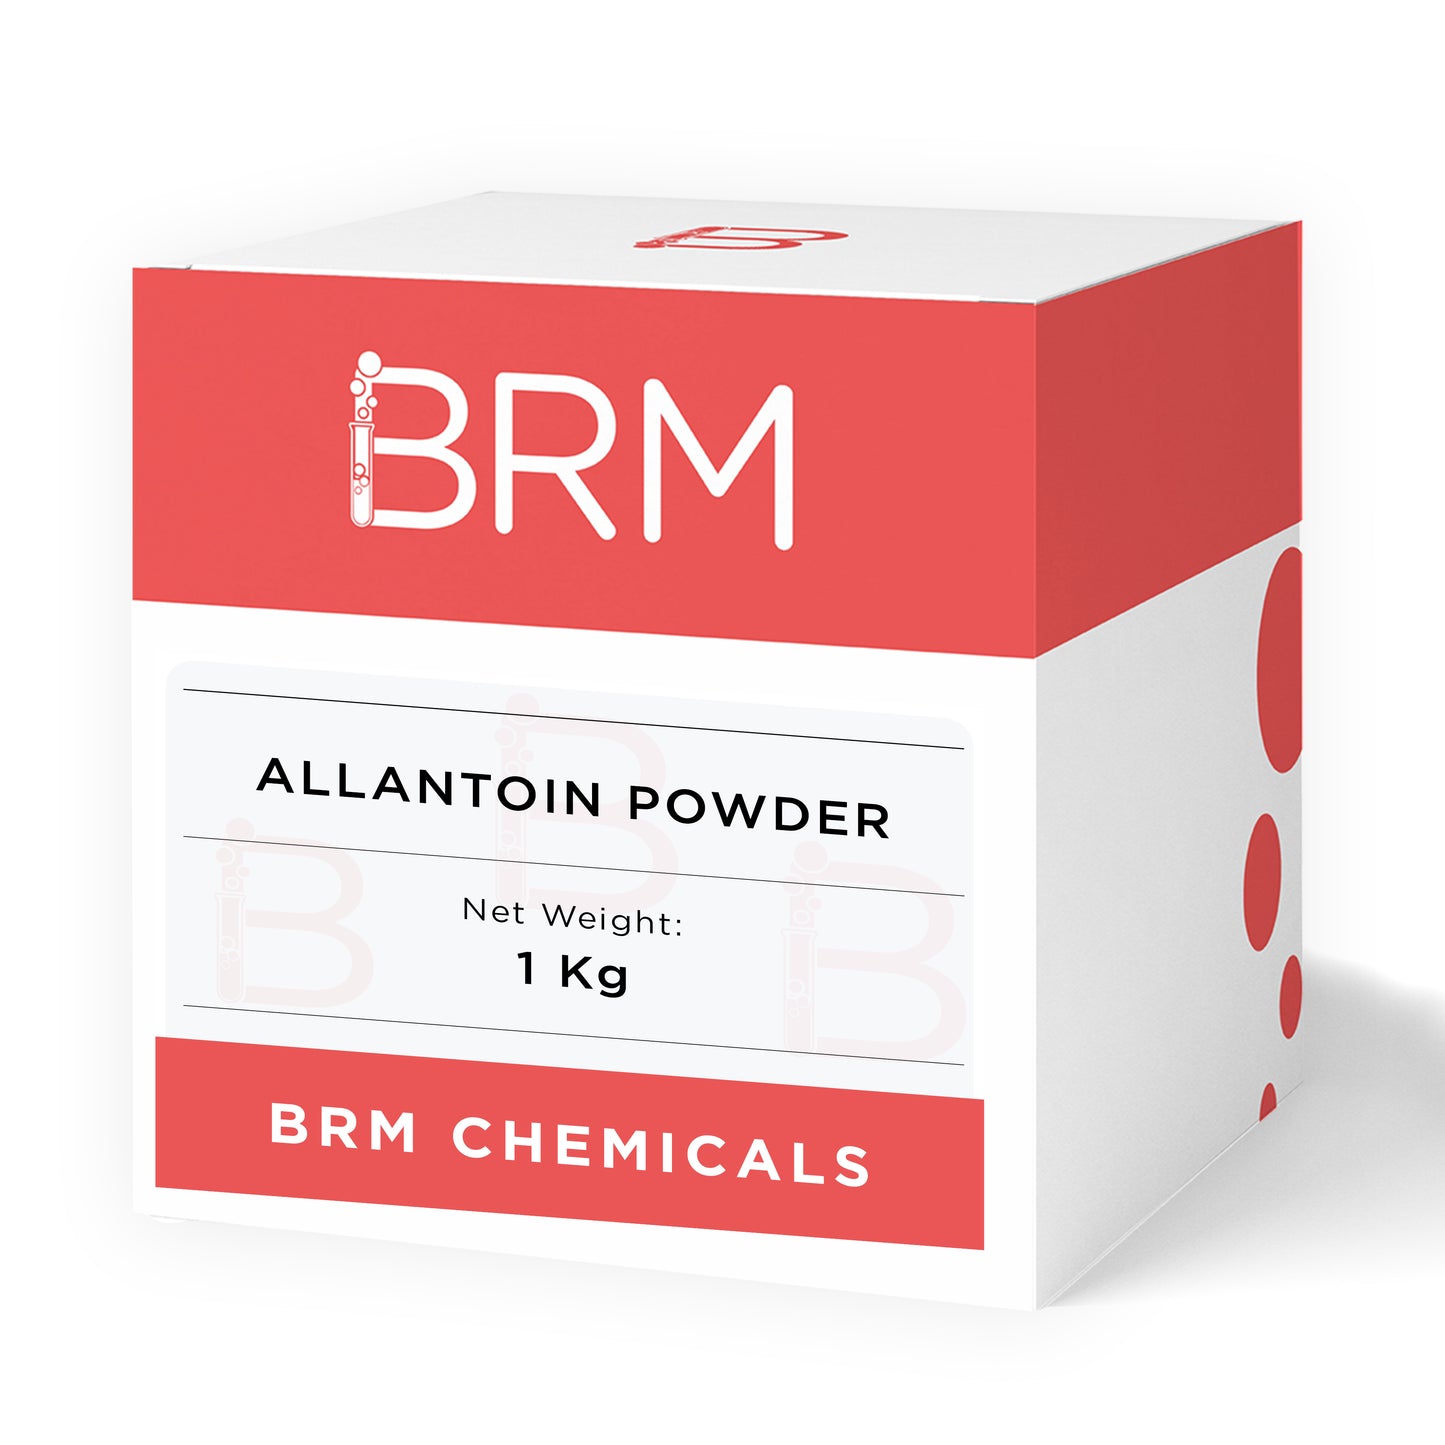 allantoin powder, 1 kg box of allantoin powder